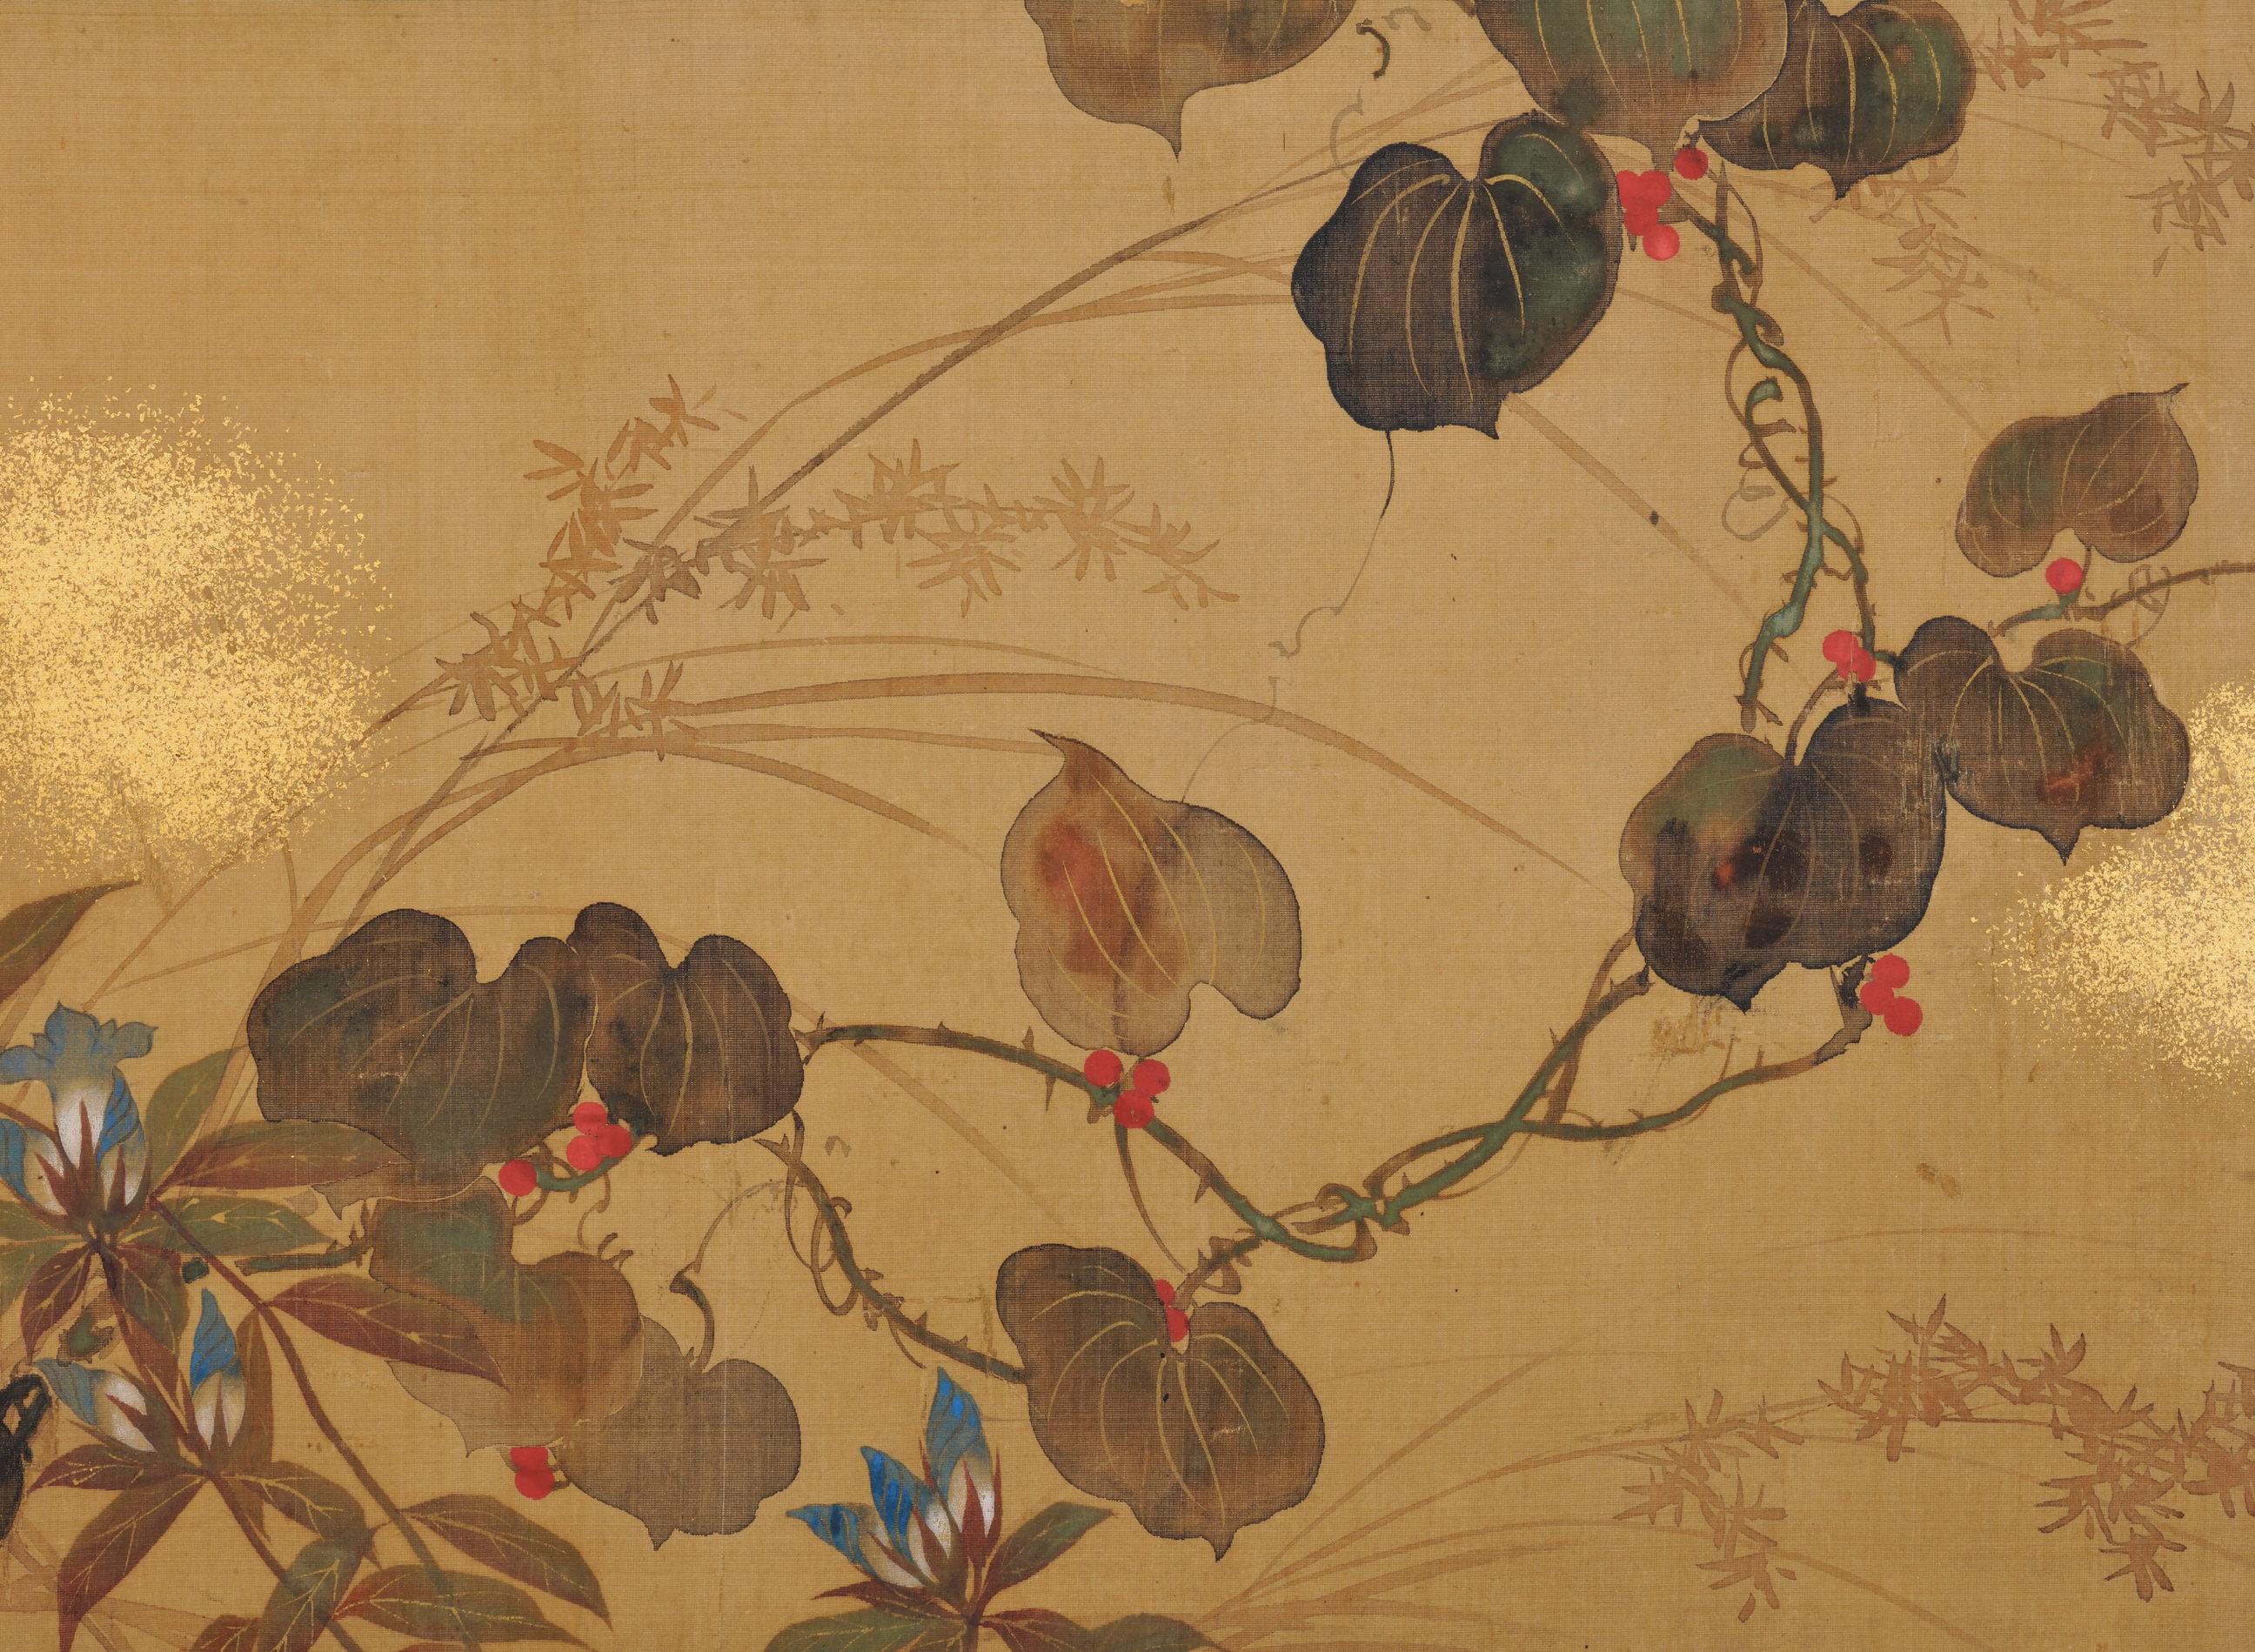 Un écran japonais à deux volets de l'artiste de l'école Rimpa Sakai Hoitsu (1761-1828), Japon, XIXe siècle, période Edo.

Ce petit écran pliant japonais peint par Sakai Hoitsu a été conçu à l'origine comme une paire de portes coulissantes pour un